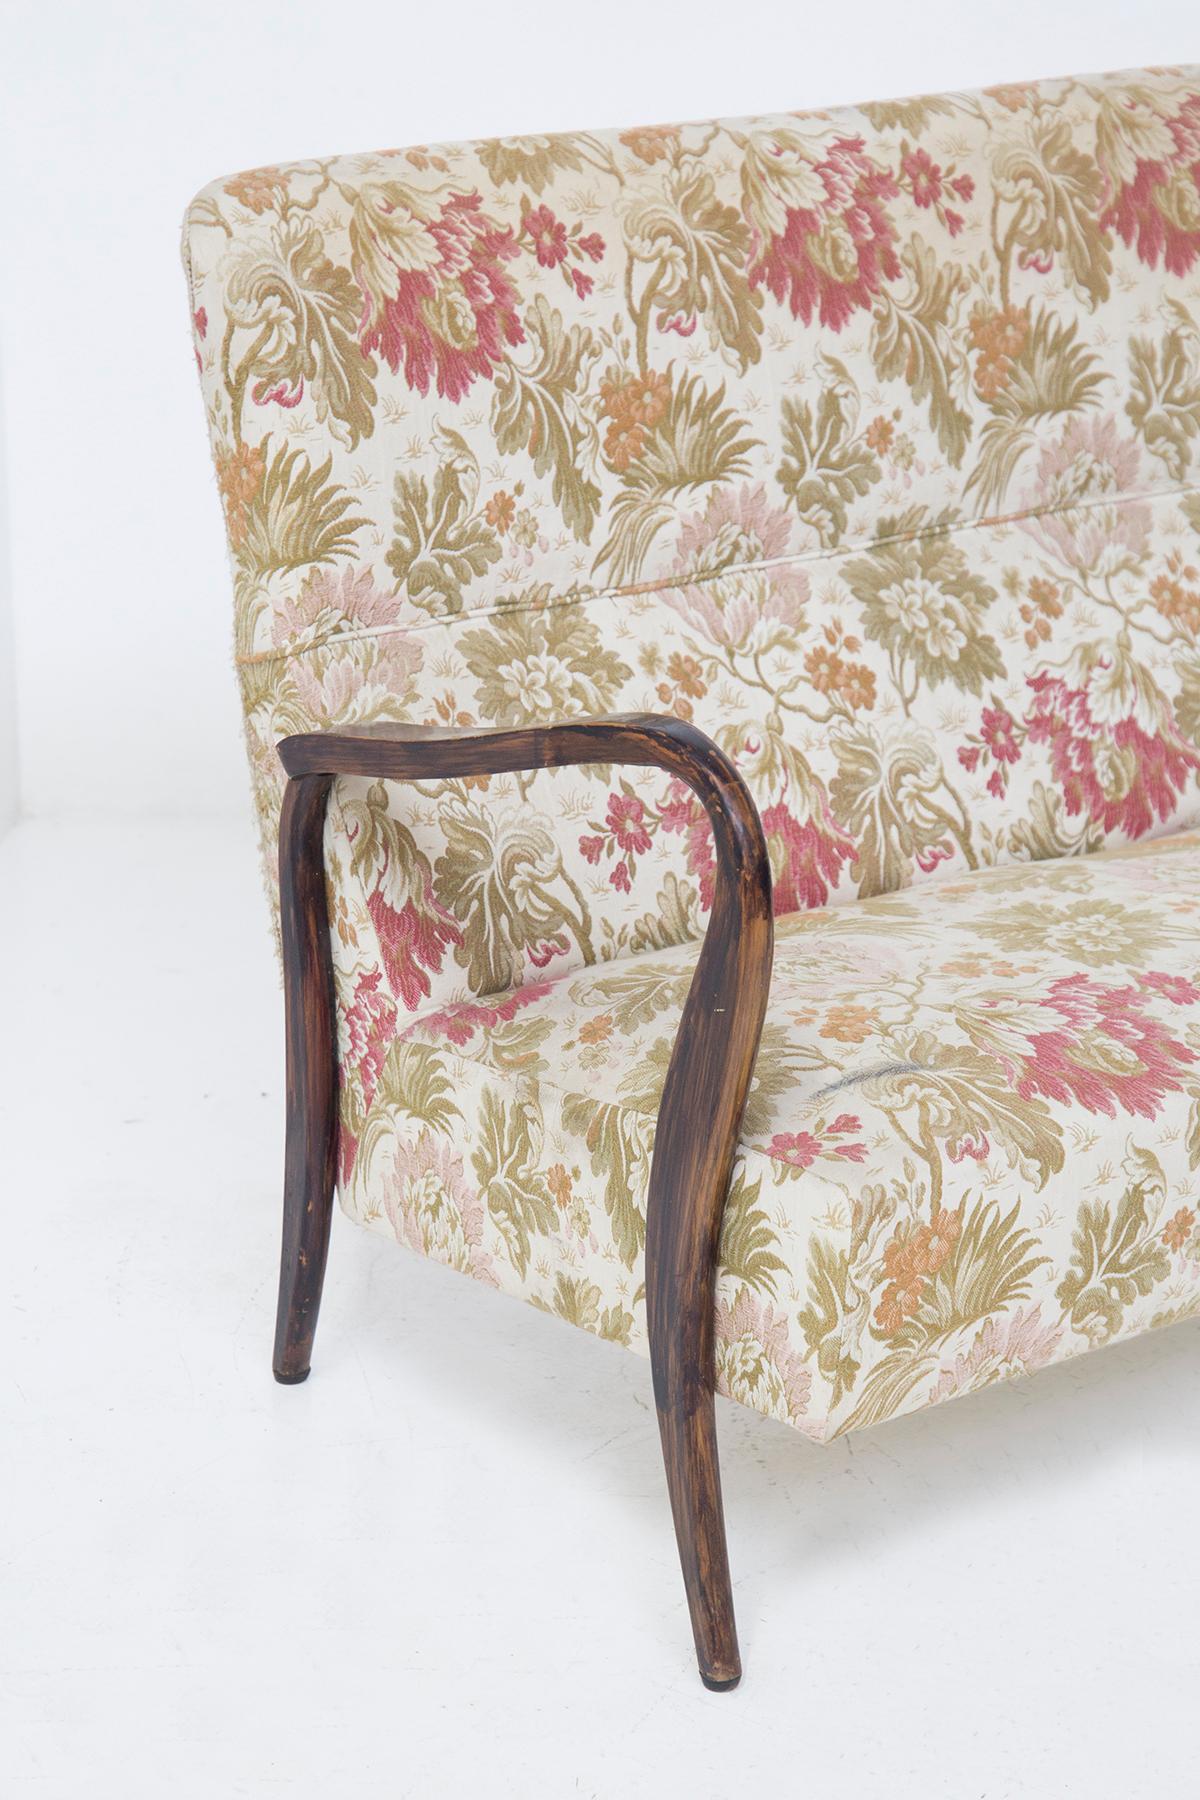 Magnifique canapé vintage à motifs floraux conçu dans les années 1950 et attribué au savoir-faire de Paolo Buffa, de fabrication italienne de qualité.
Le canapé a une base très élégante en bois précieux foncé, les pieds de soutien sont perforés à